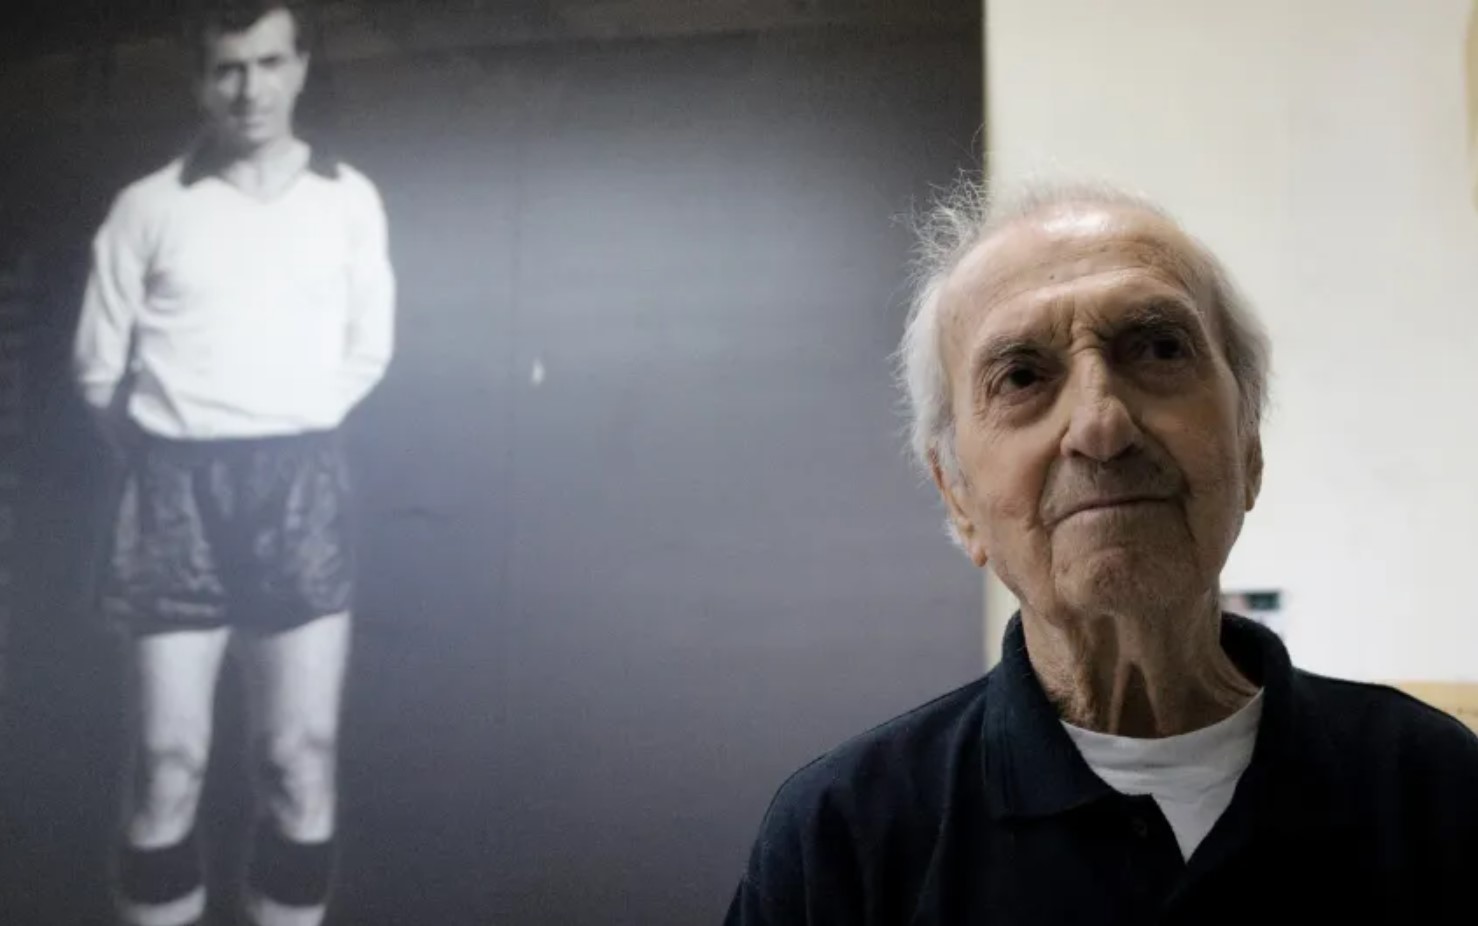 Έφυγε από τη ζωή στα 93 του ο θρύλος της ΑΕΚ και του ελληνικού ποδοσφαίρου, Κώστας Νεστορίδης. Σύνταξη ΙΝ